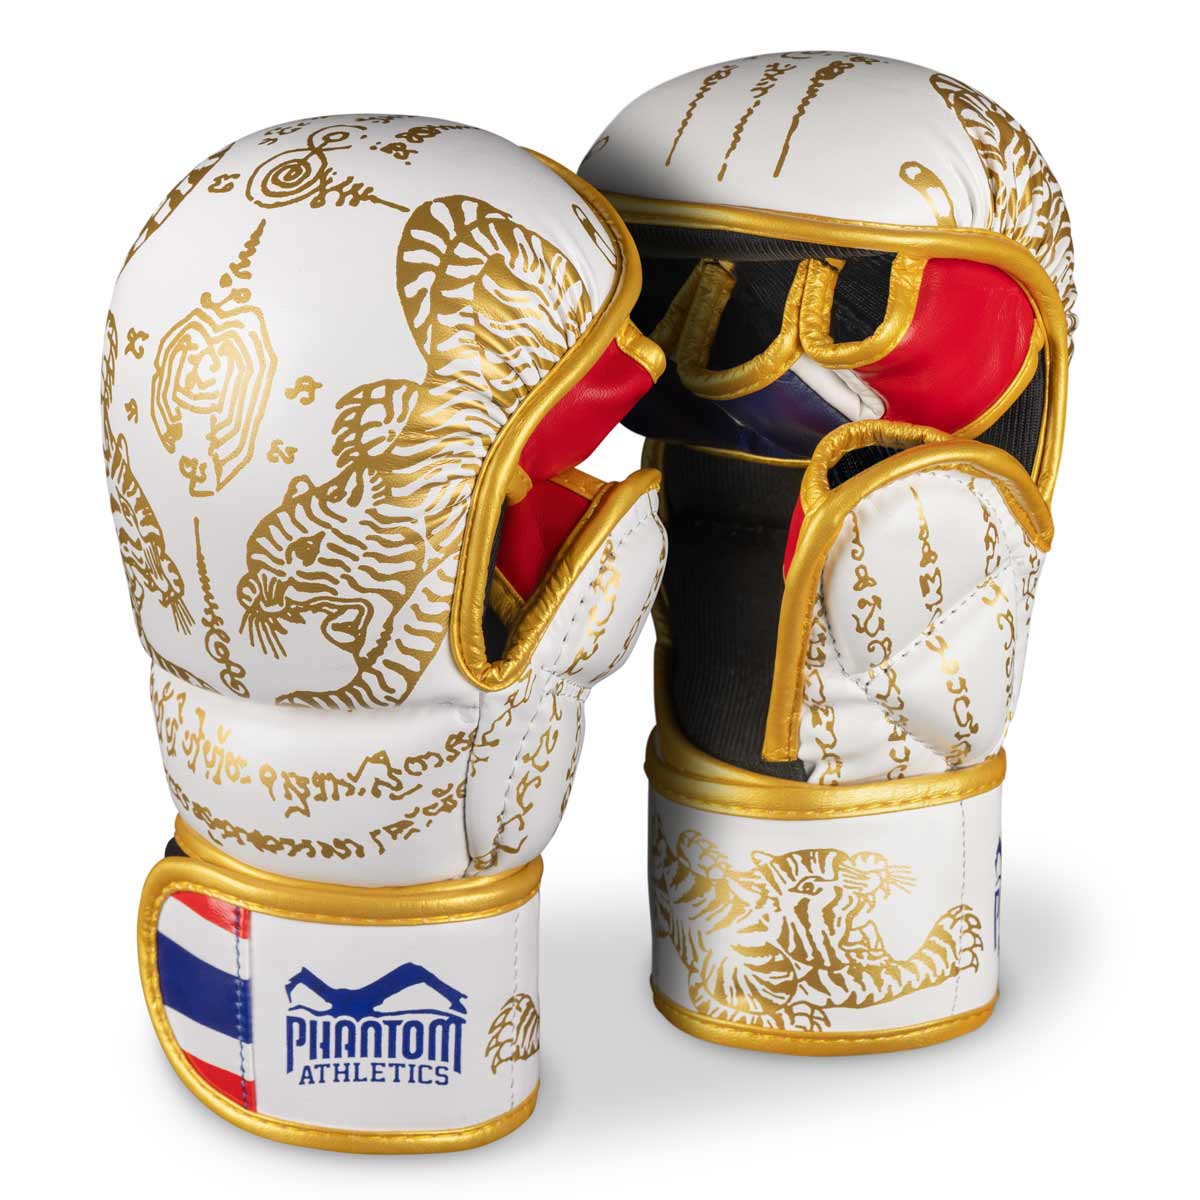 Phantom Muay Thai-handschoenen voor Thaiboksen en MMA-sparren, competitie en training. In het traditionele Sak Yant design en de kleur wit/goud.